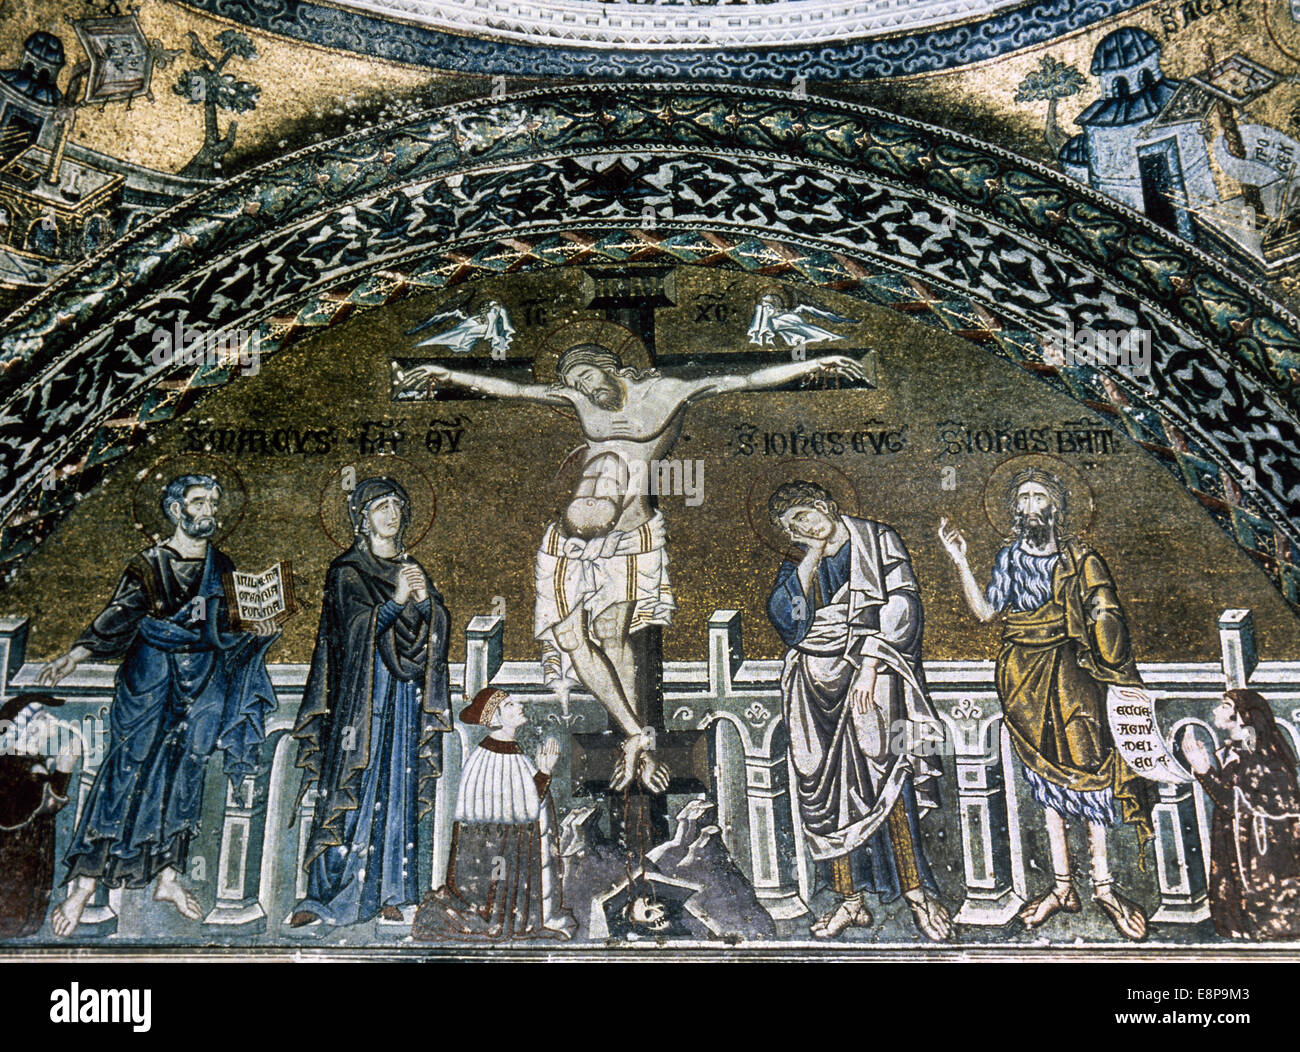 L'Italia. Venezia. La Basilica di San Marco. La crocifissione di Gesù. Xii-XIV secolo. Mosaico. Foto Stock